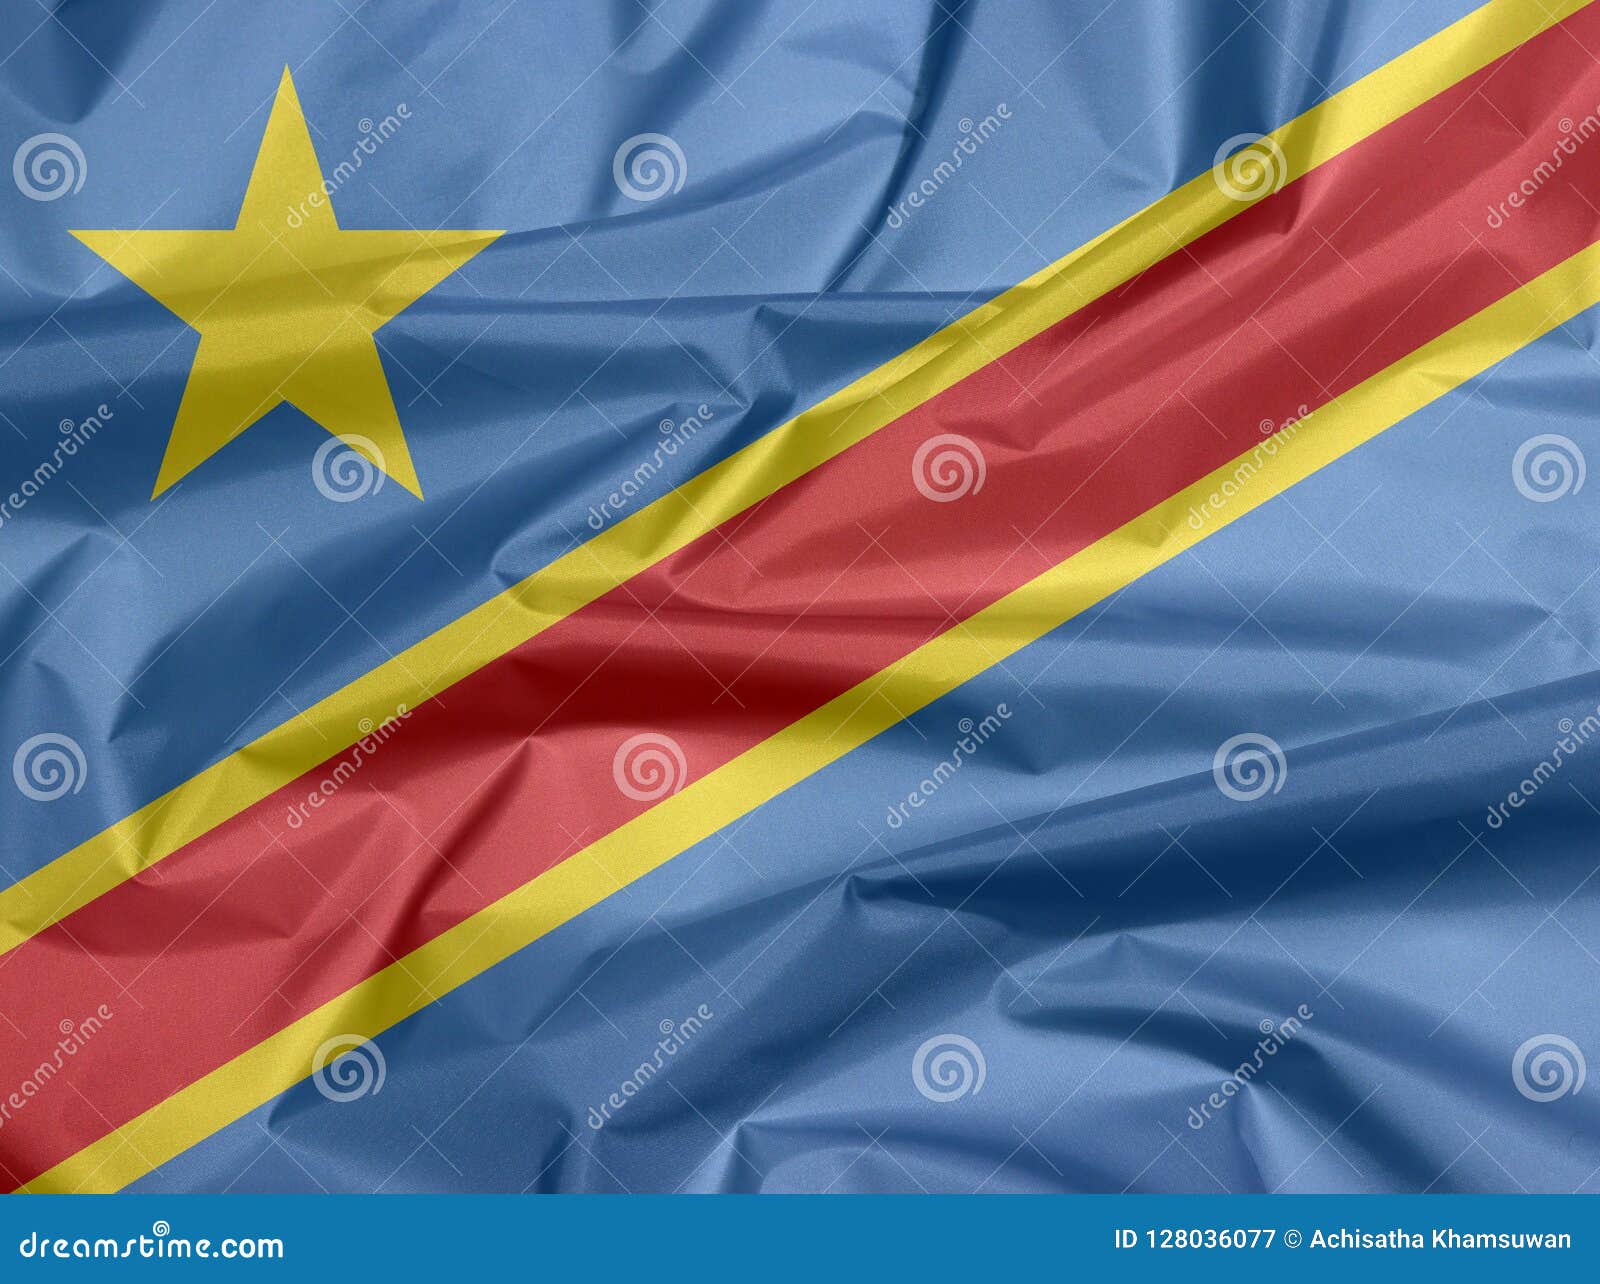 Bandera de la tela del Dr. Congo Pliegue del fondo de la bandera del Dr. Congo, campo del azul de cielo con la raya y la estrella diagonalmente rojas y amarillas